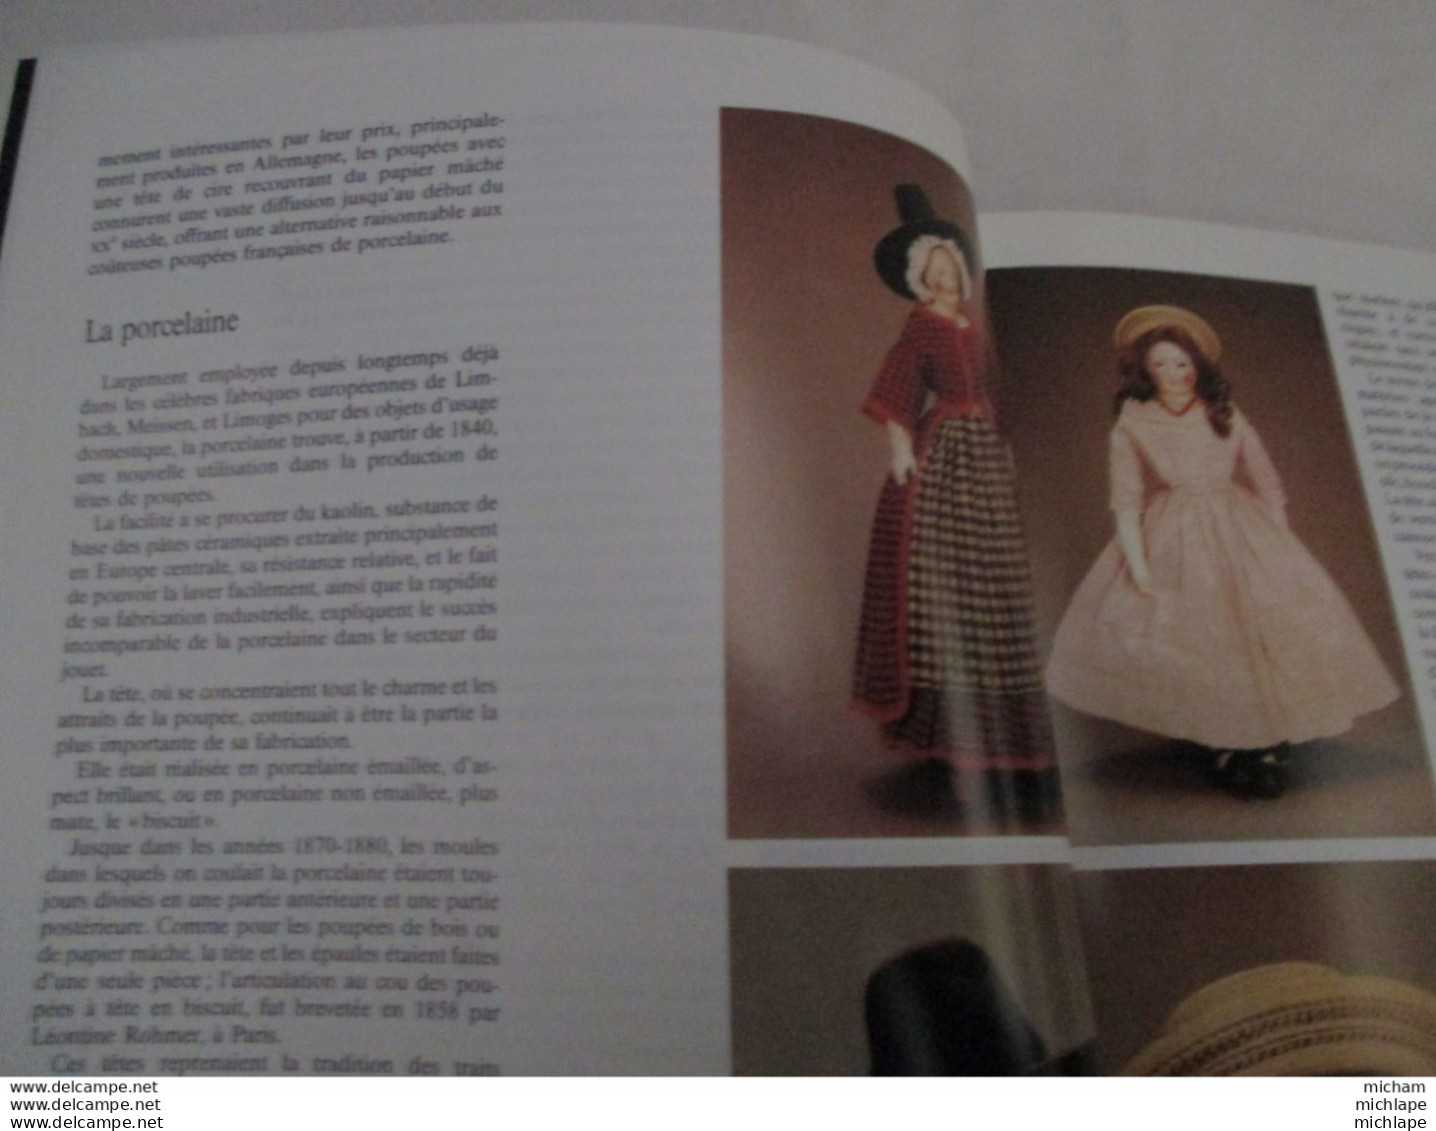 antiquité  et objets d'art - poupées   - 1990 - 79 pages  -edit. fabri - format  22 x 29 -trés bon état